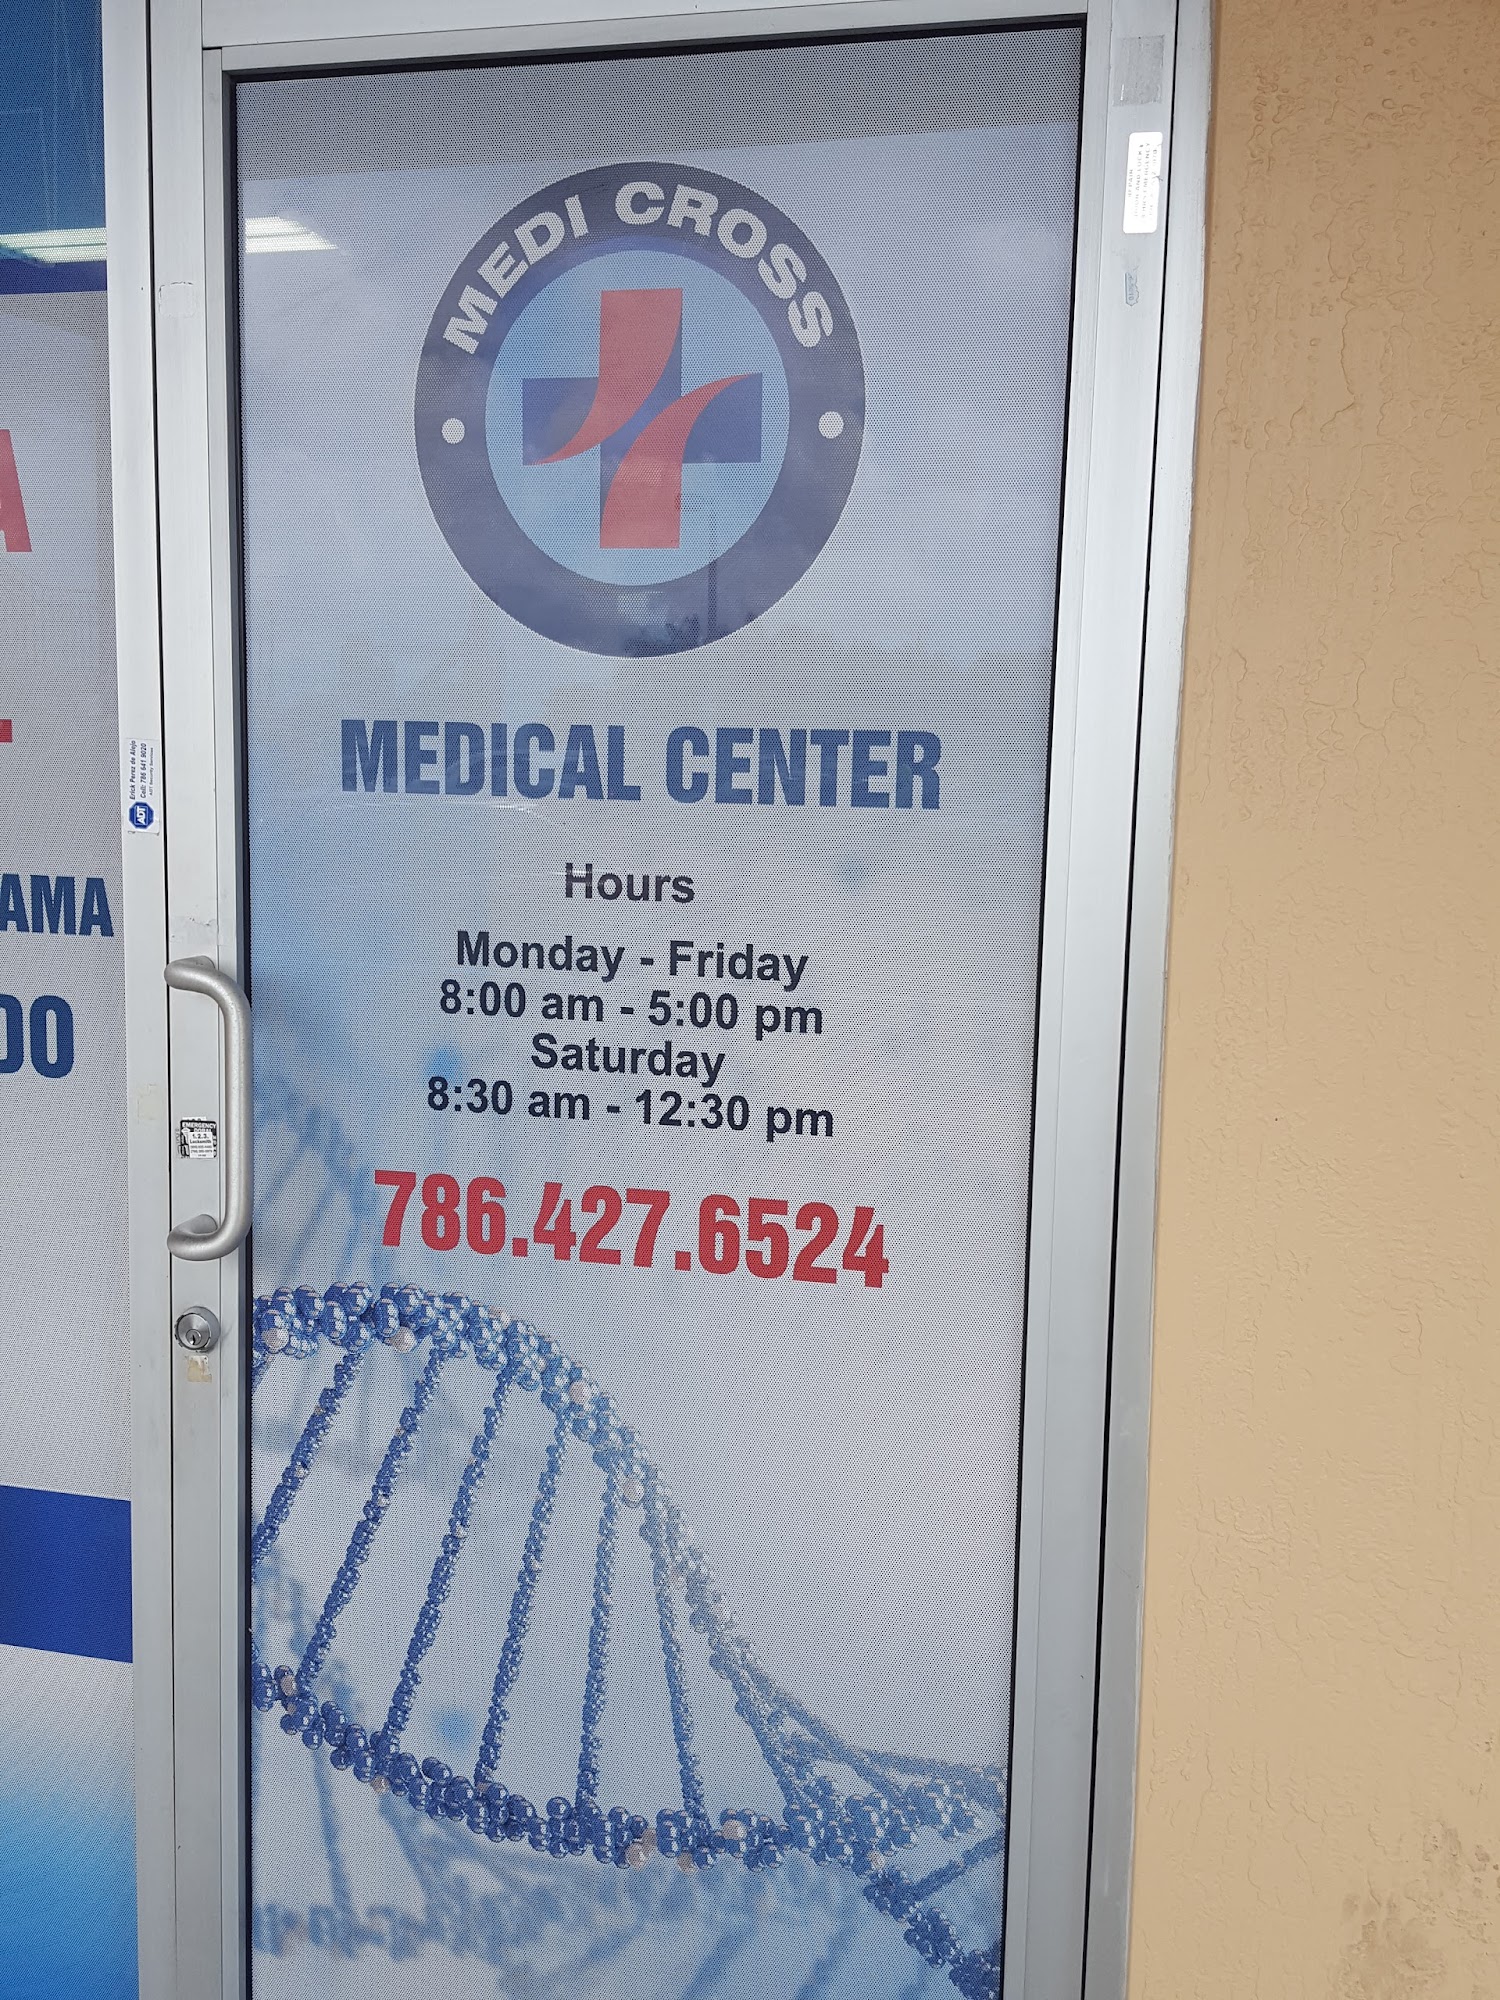 Medi Cross Medical Center